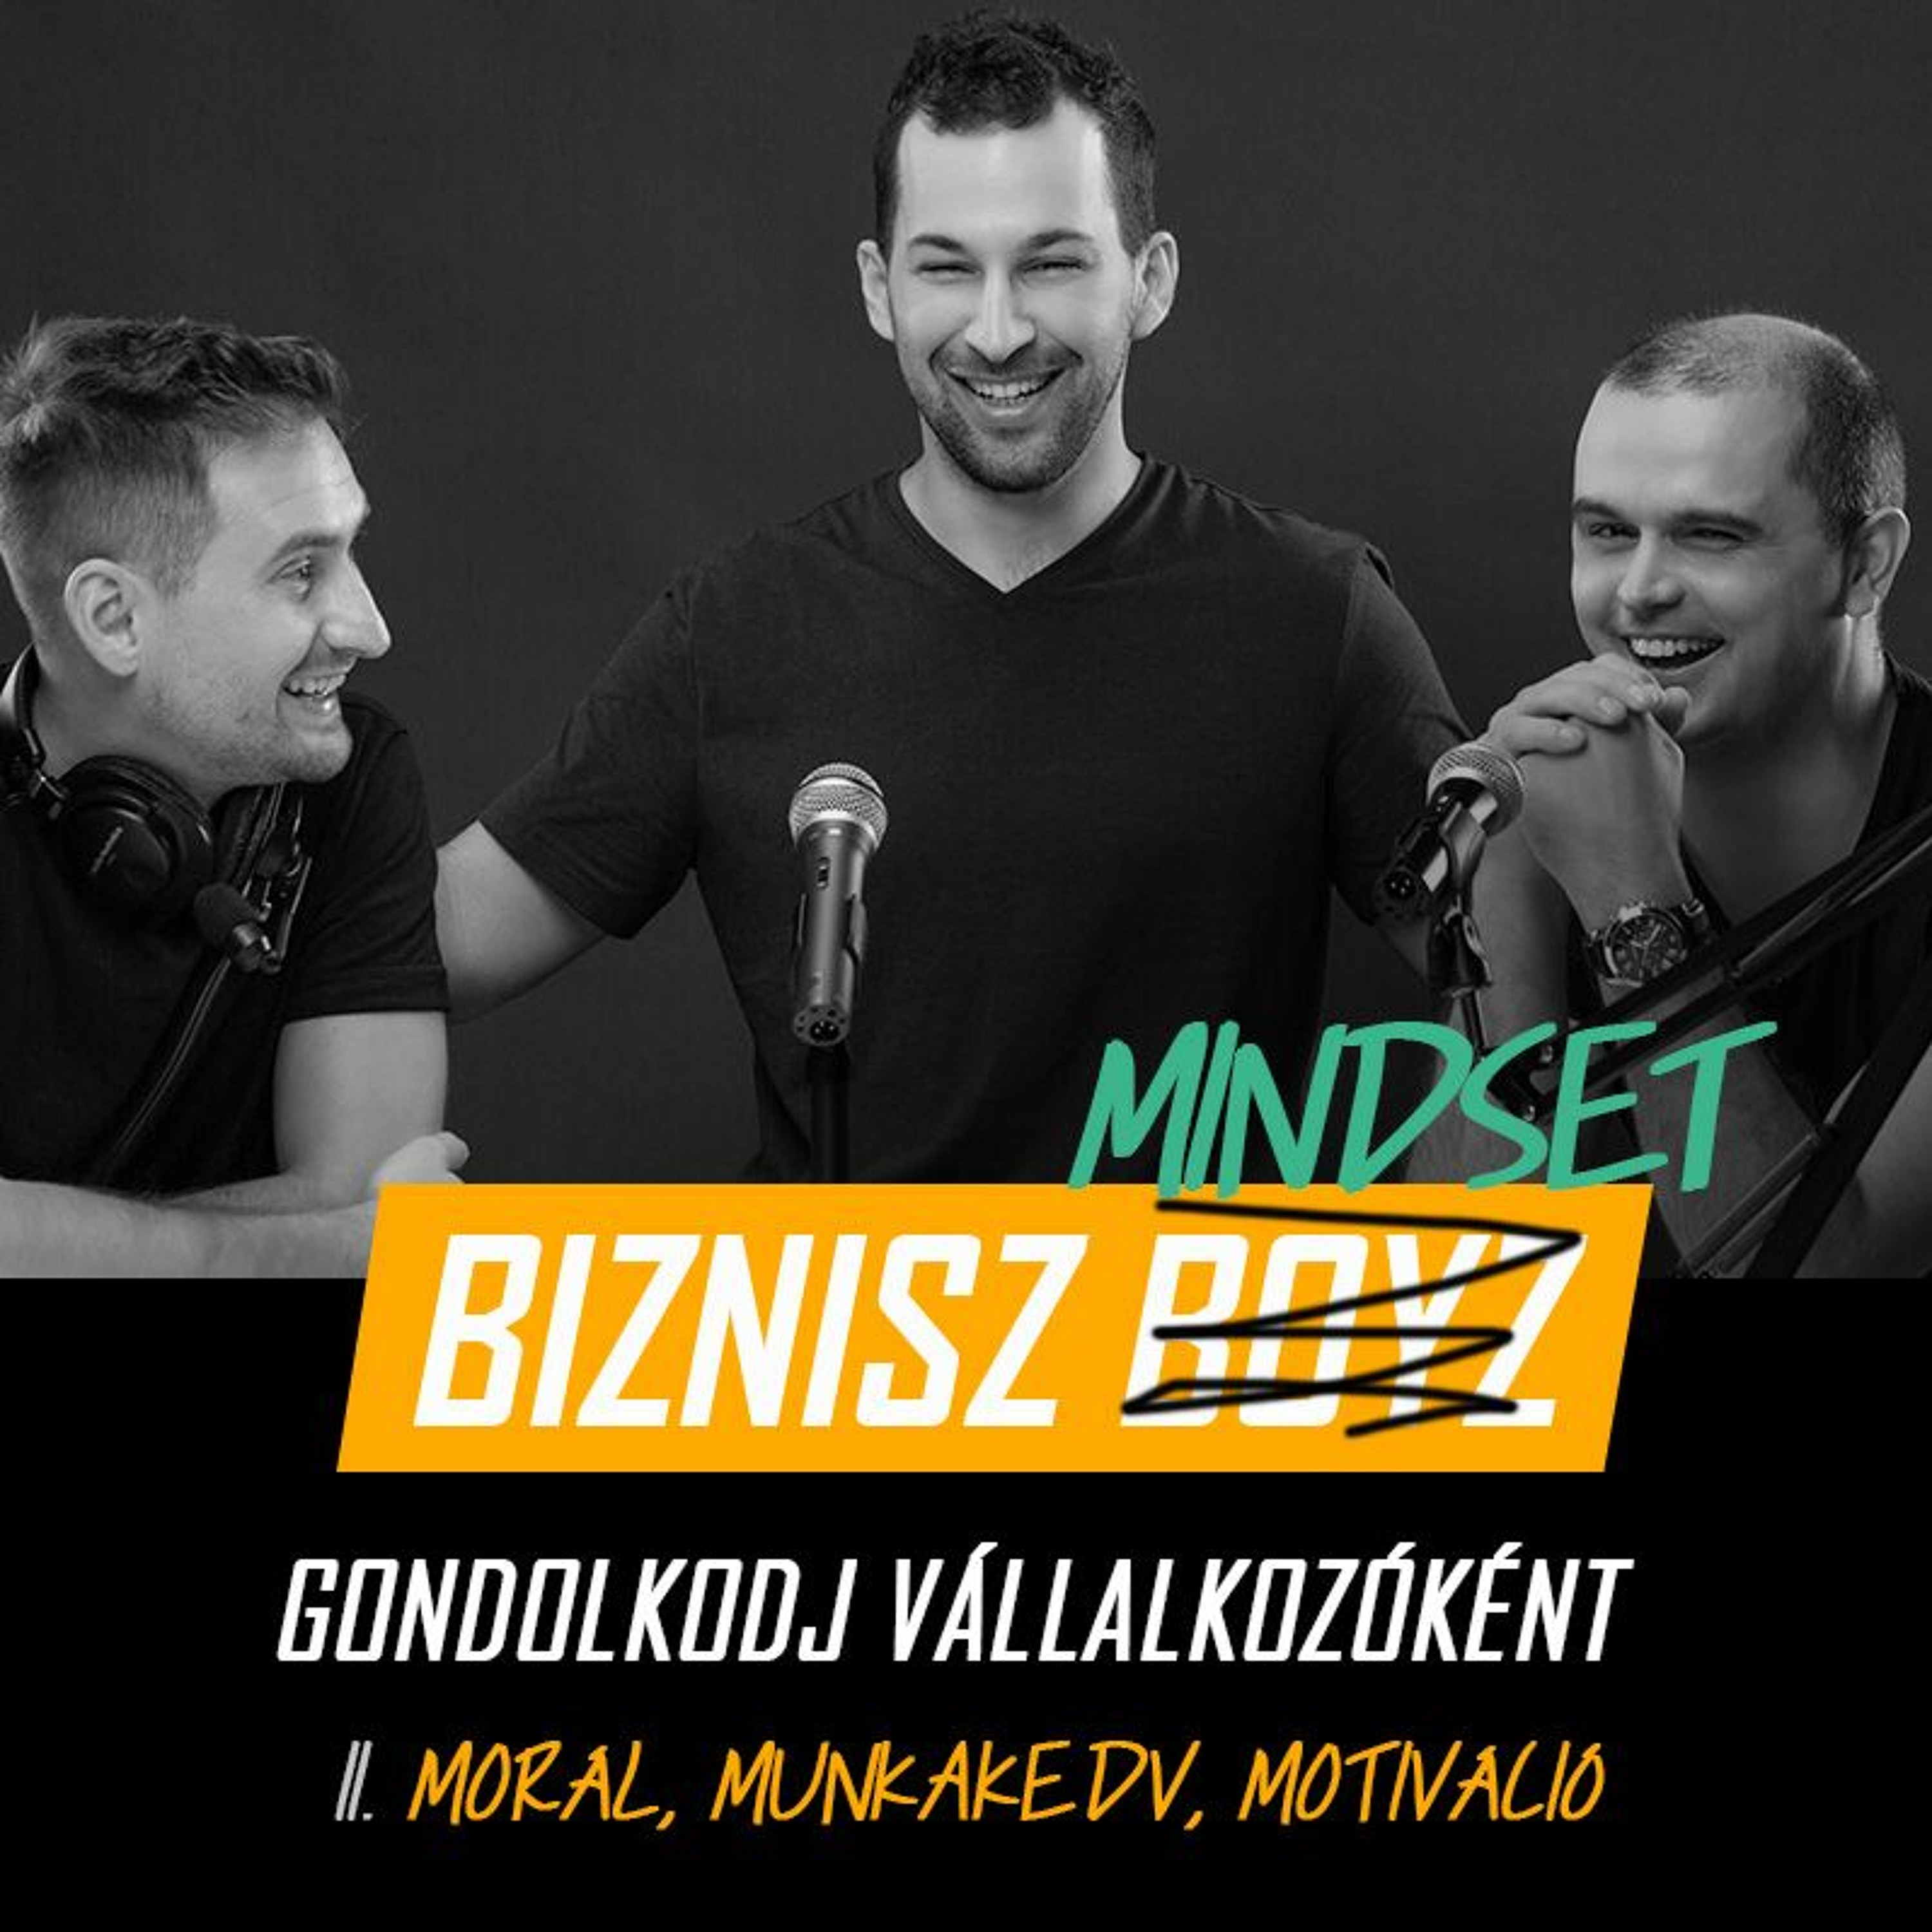 Biznisz Mindset - Gondolkodj Vállalkozóként II. Morál, munkakedv, motiváció | Biznisz Boyz Podcast